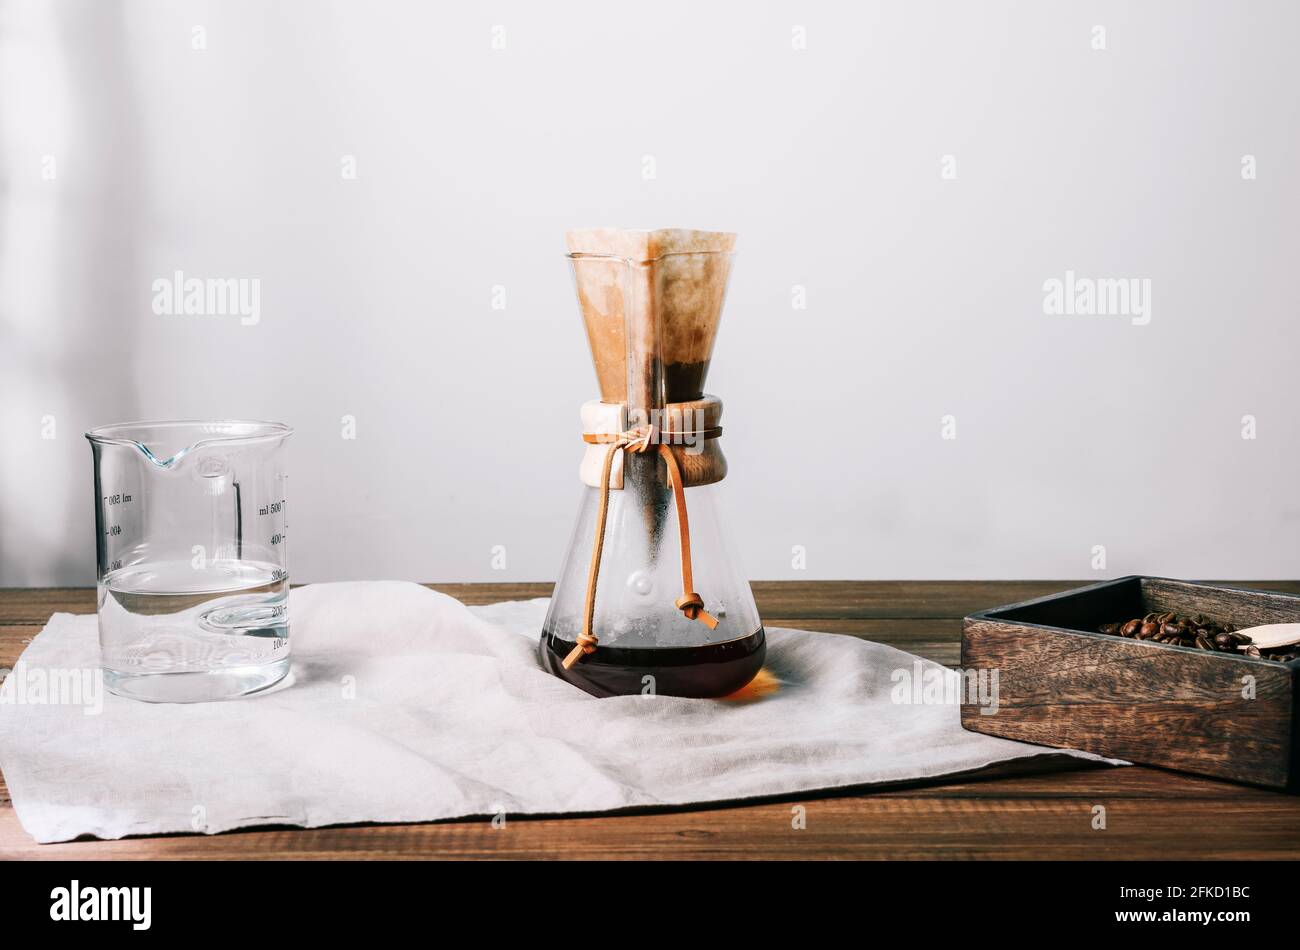 Manuelle Glas-Kaffeekocher mit Filter und Kaffee auf einem Graues Tuch auf einem Holztisch mit Kaffeebohnenbehälter Und Glas-Messbecher an den Seiten Stockfoto